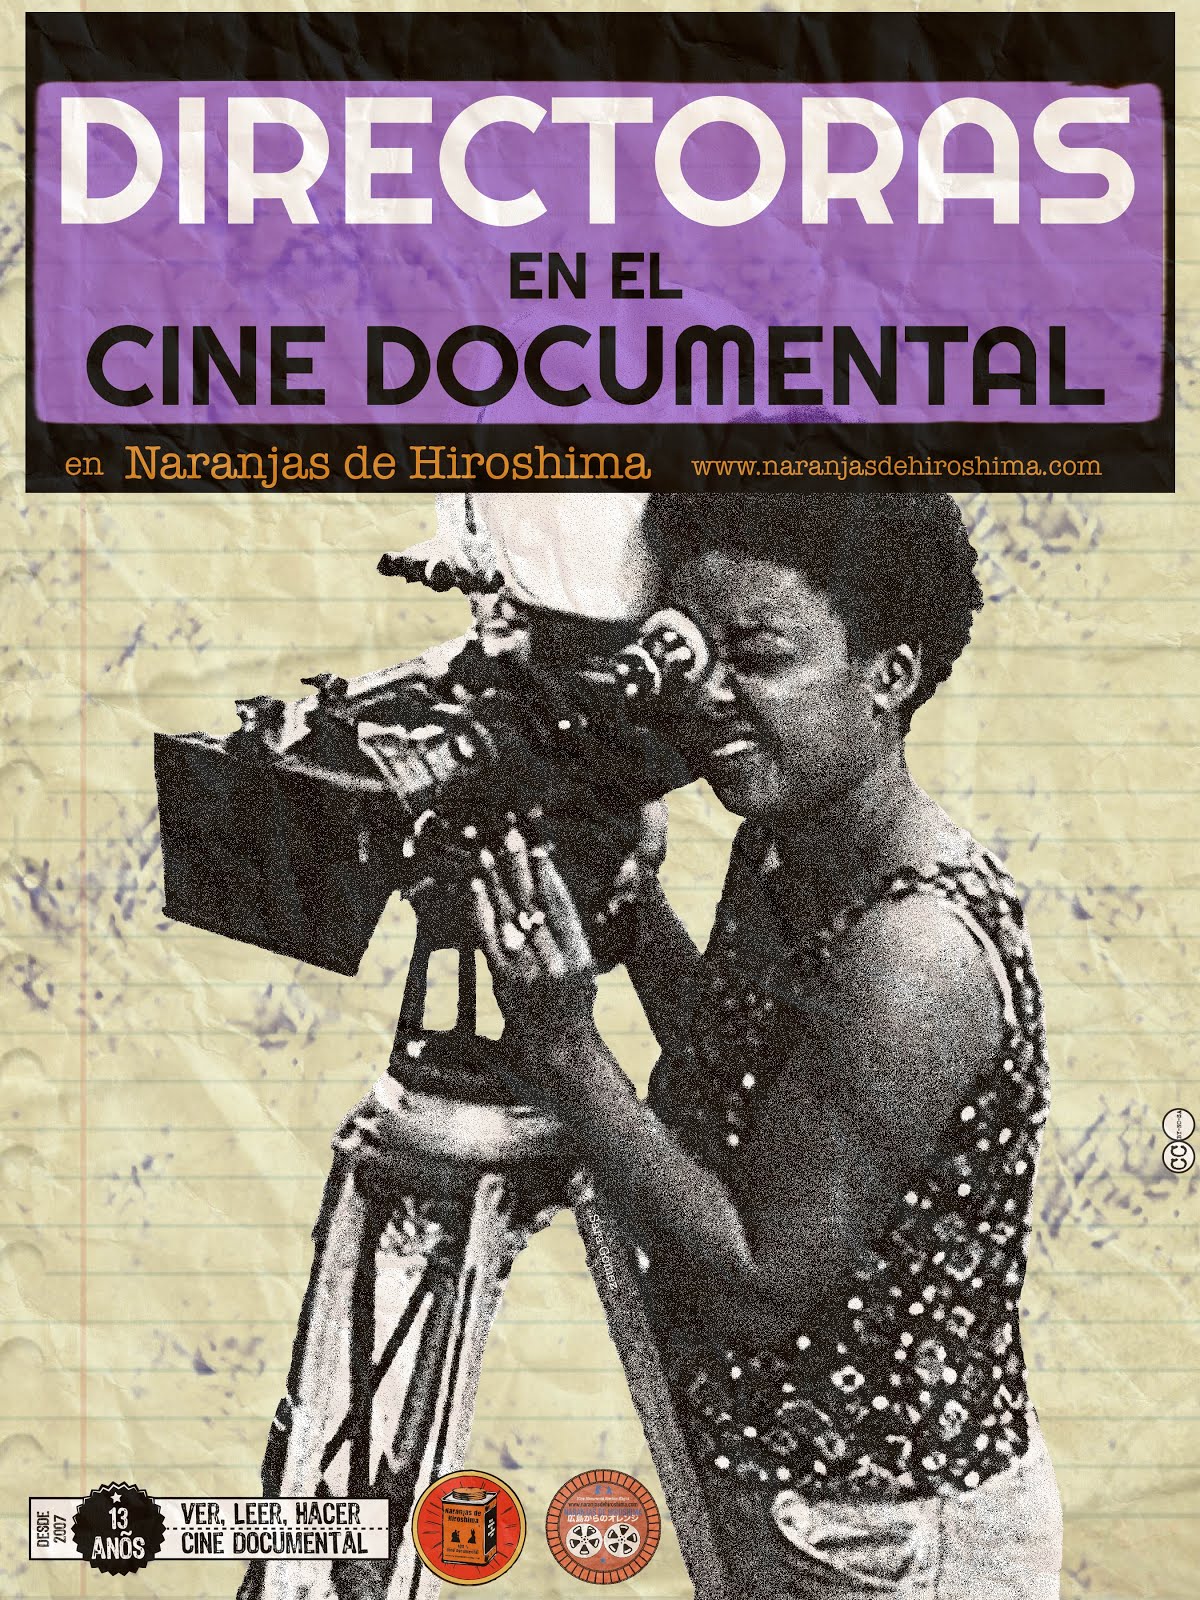 #Directoras en el #Cine #Documental